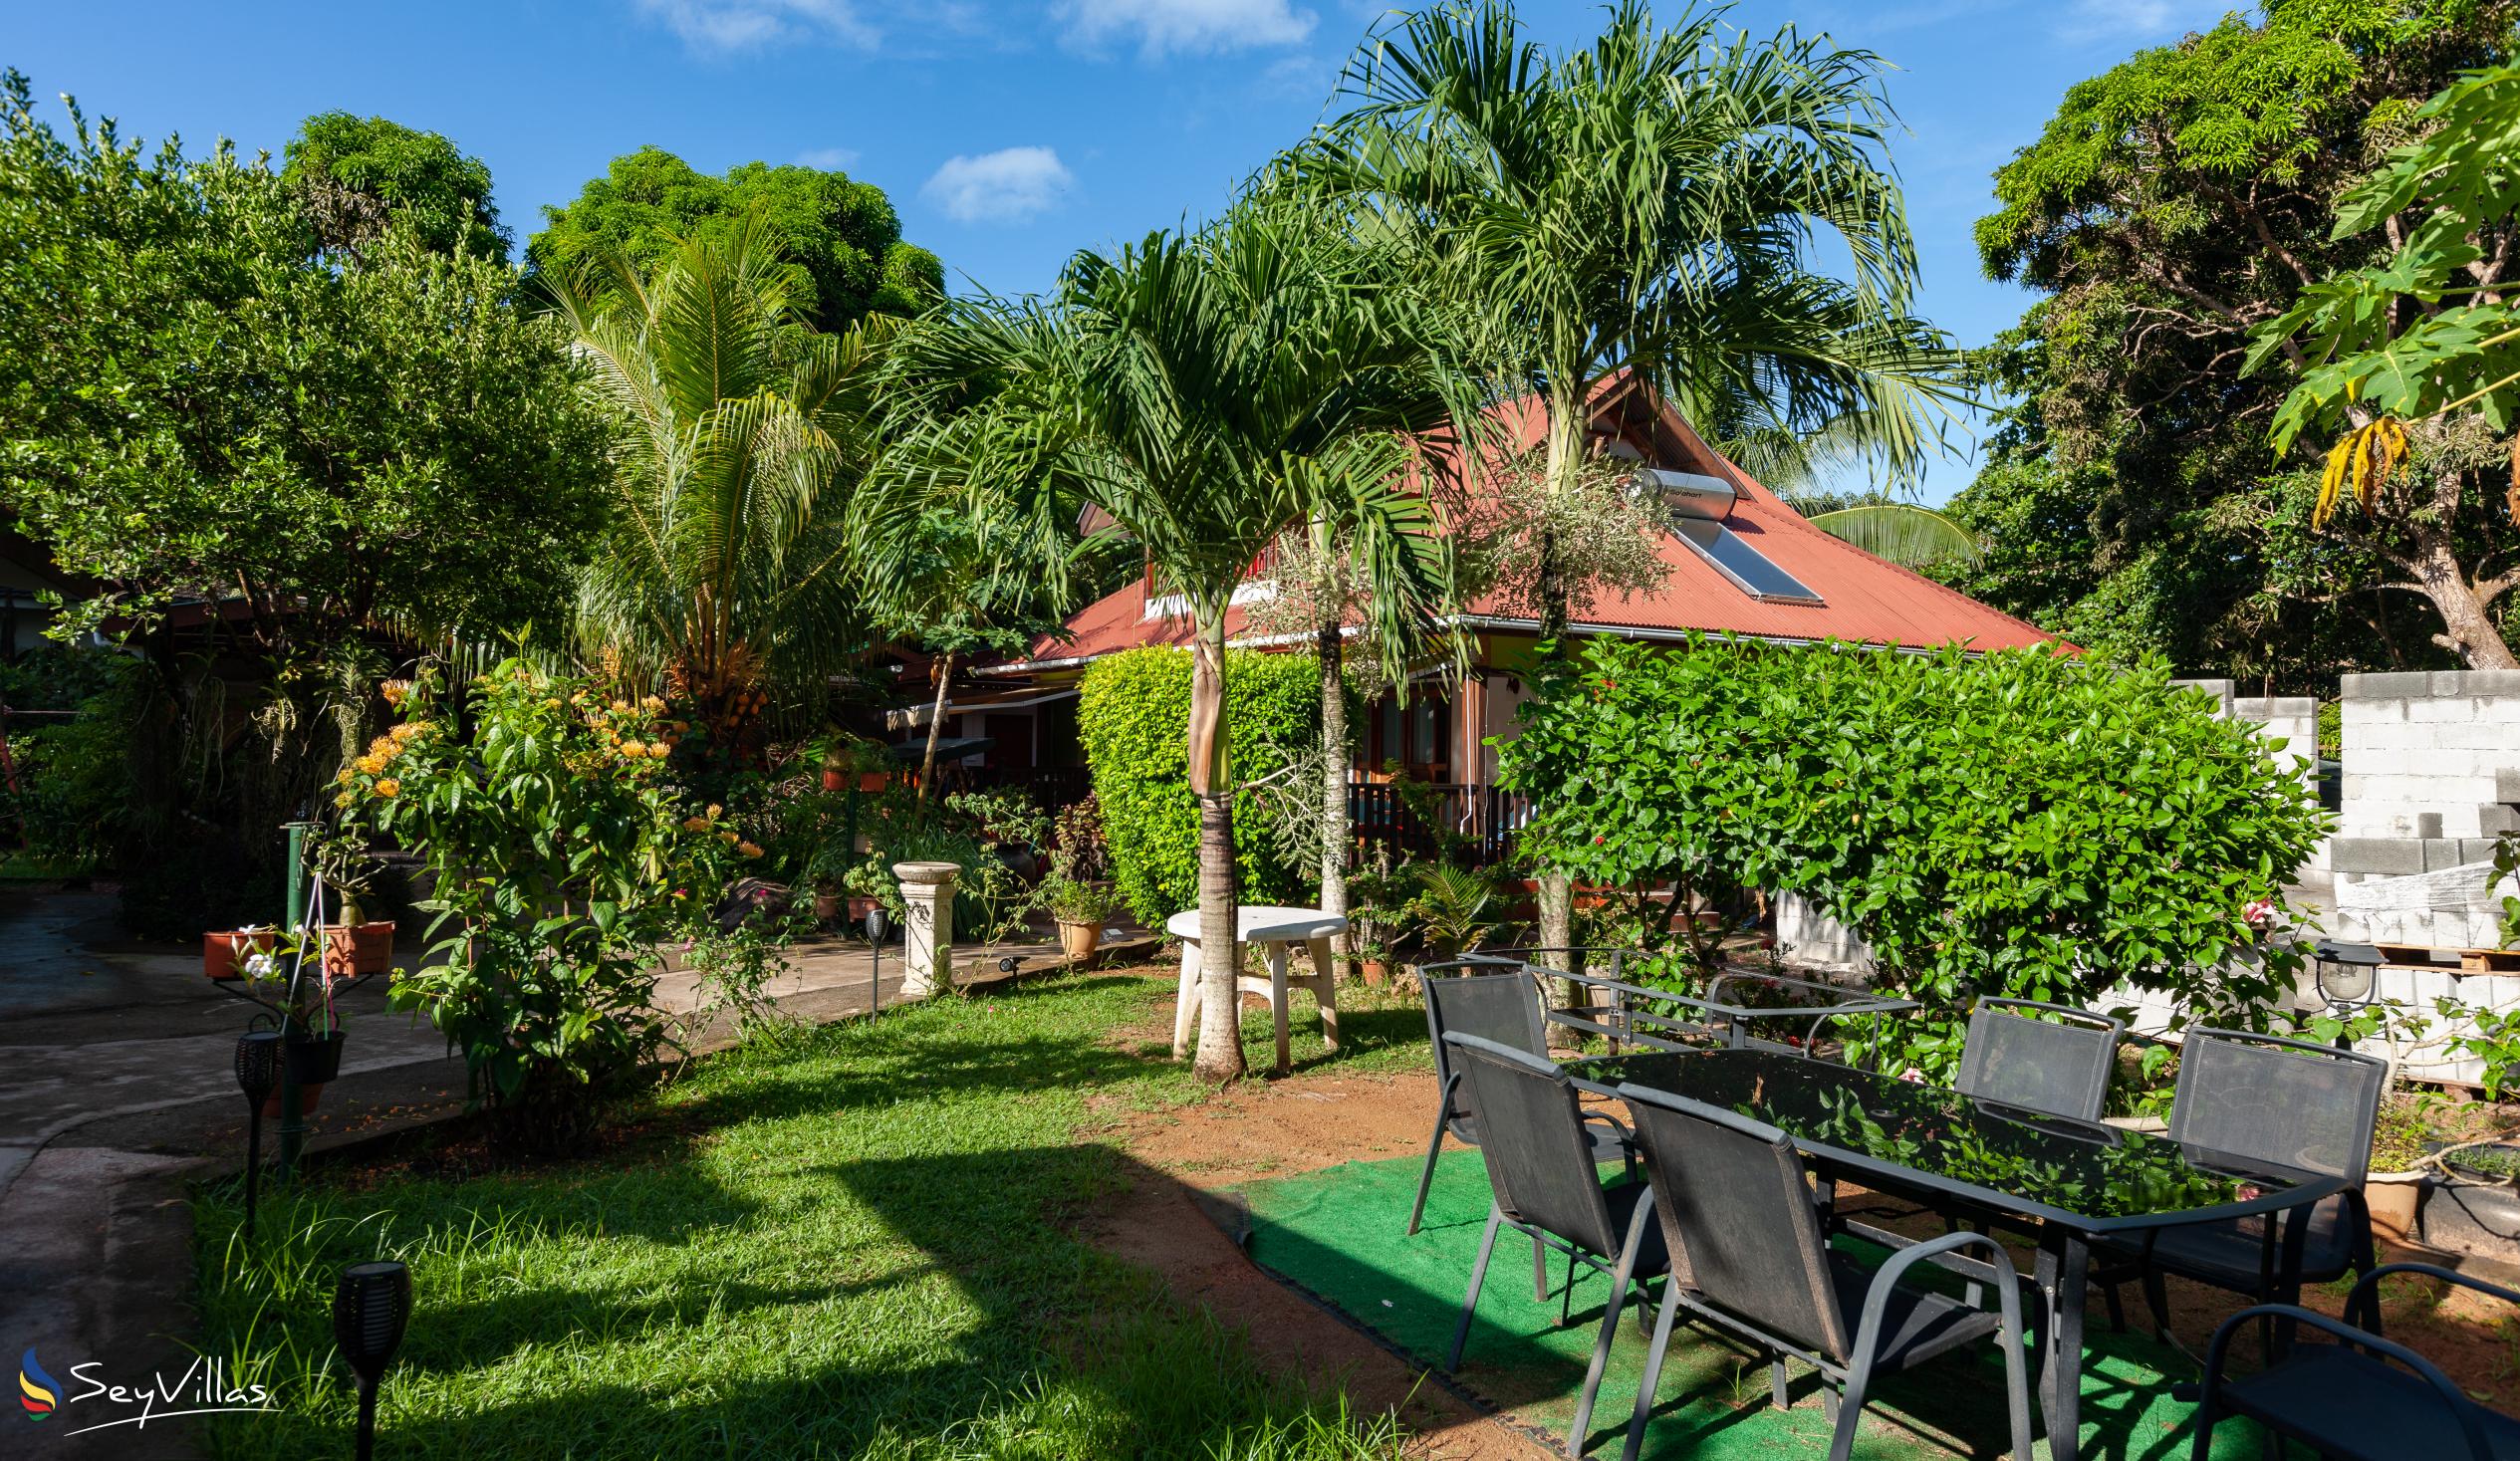 Photo 9: Chloe's Cottage - Outdoor area - La Digue (Seychelles)